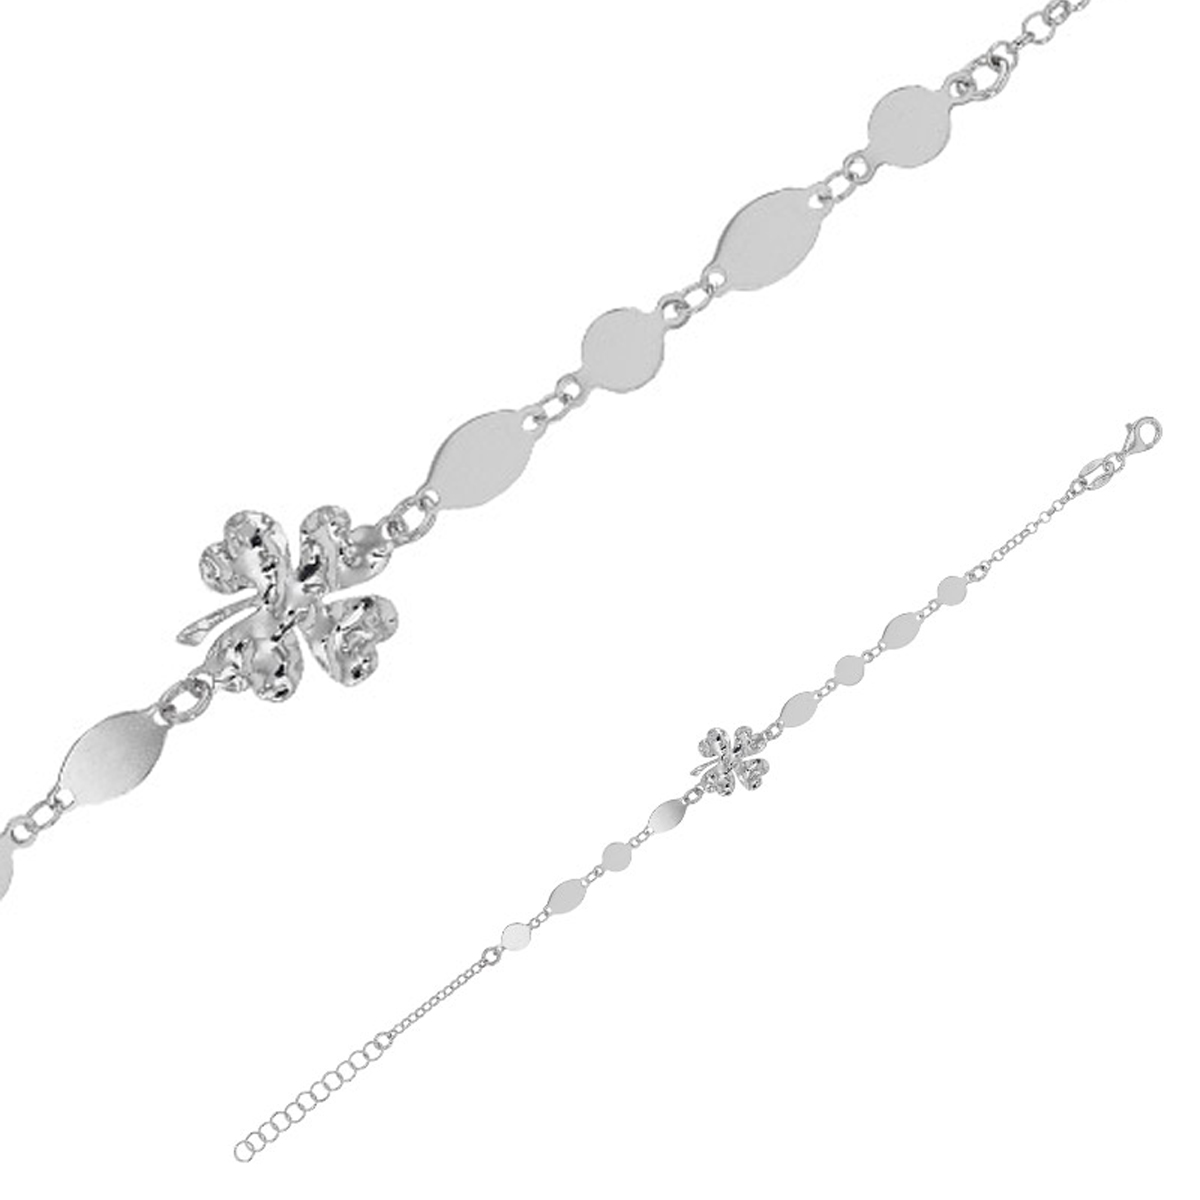 Bracelet Argent artisanal \'Cléopatra\' argenté (rhodié) - 12x11 mm (trèfle) - [R4987]